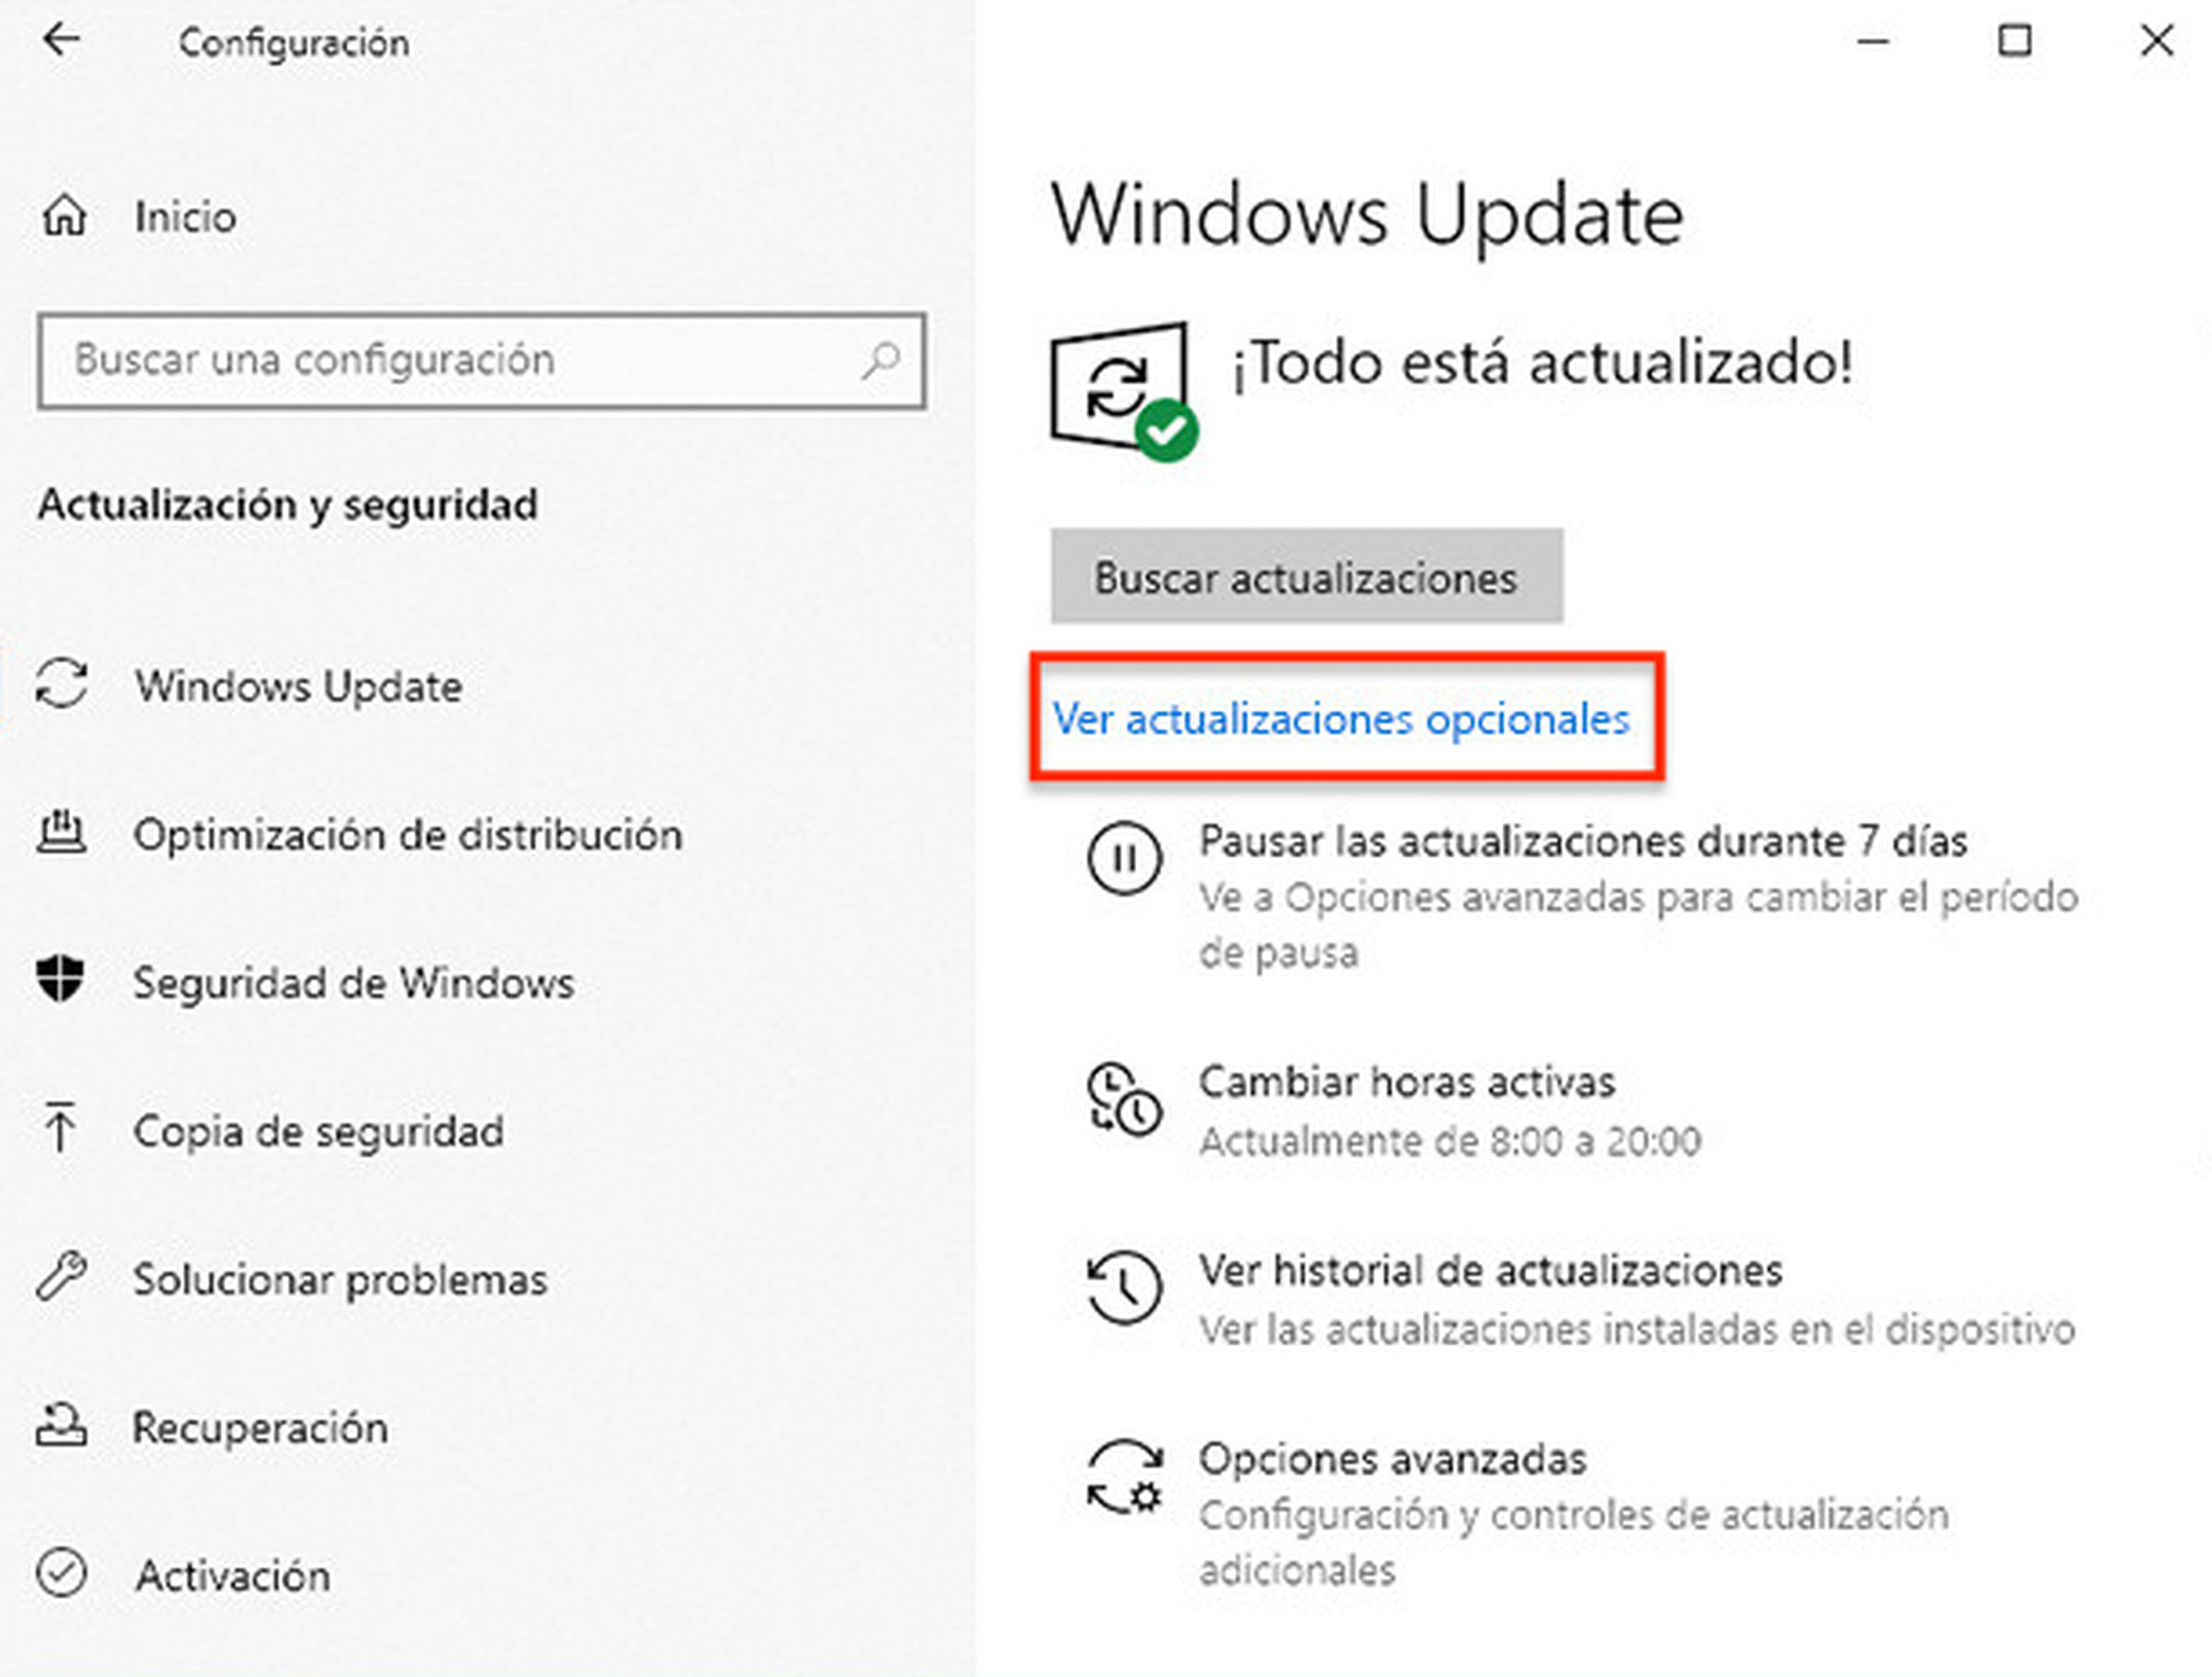 Actualizaciones temporales en Windows 10